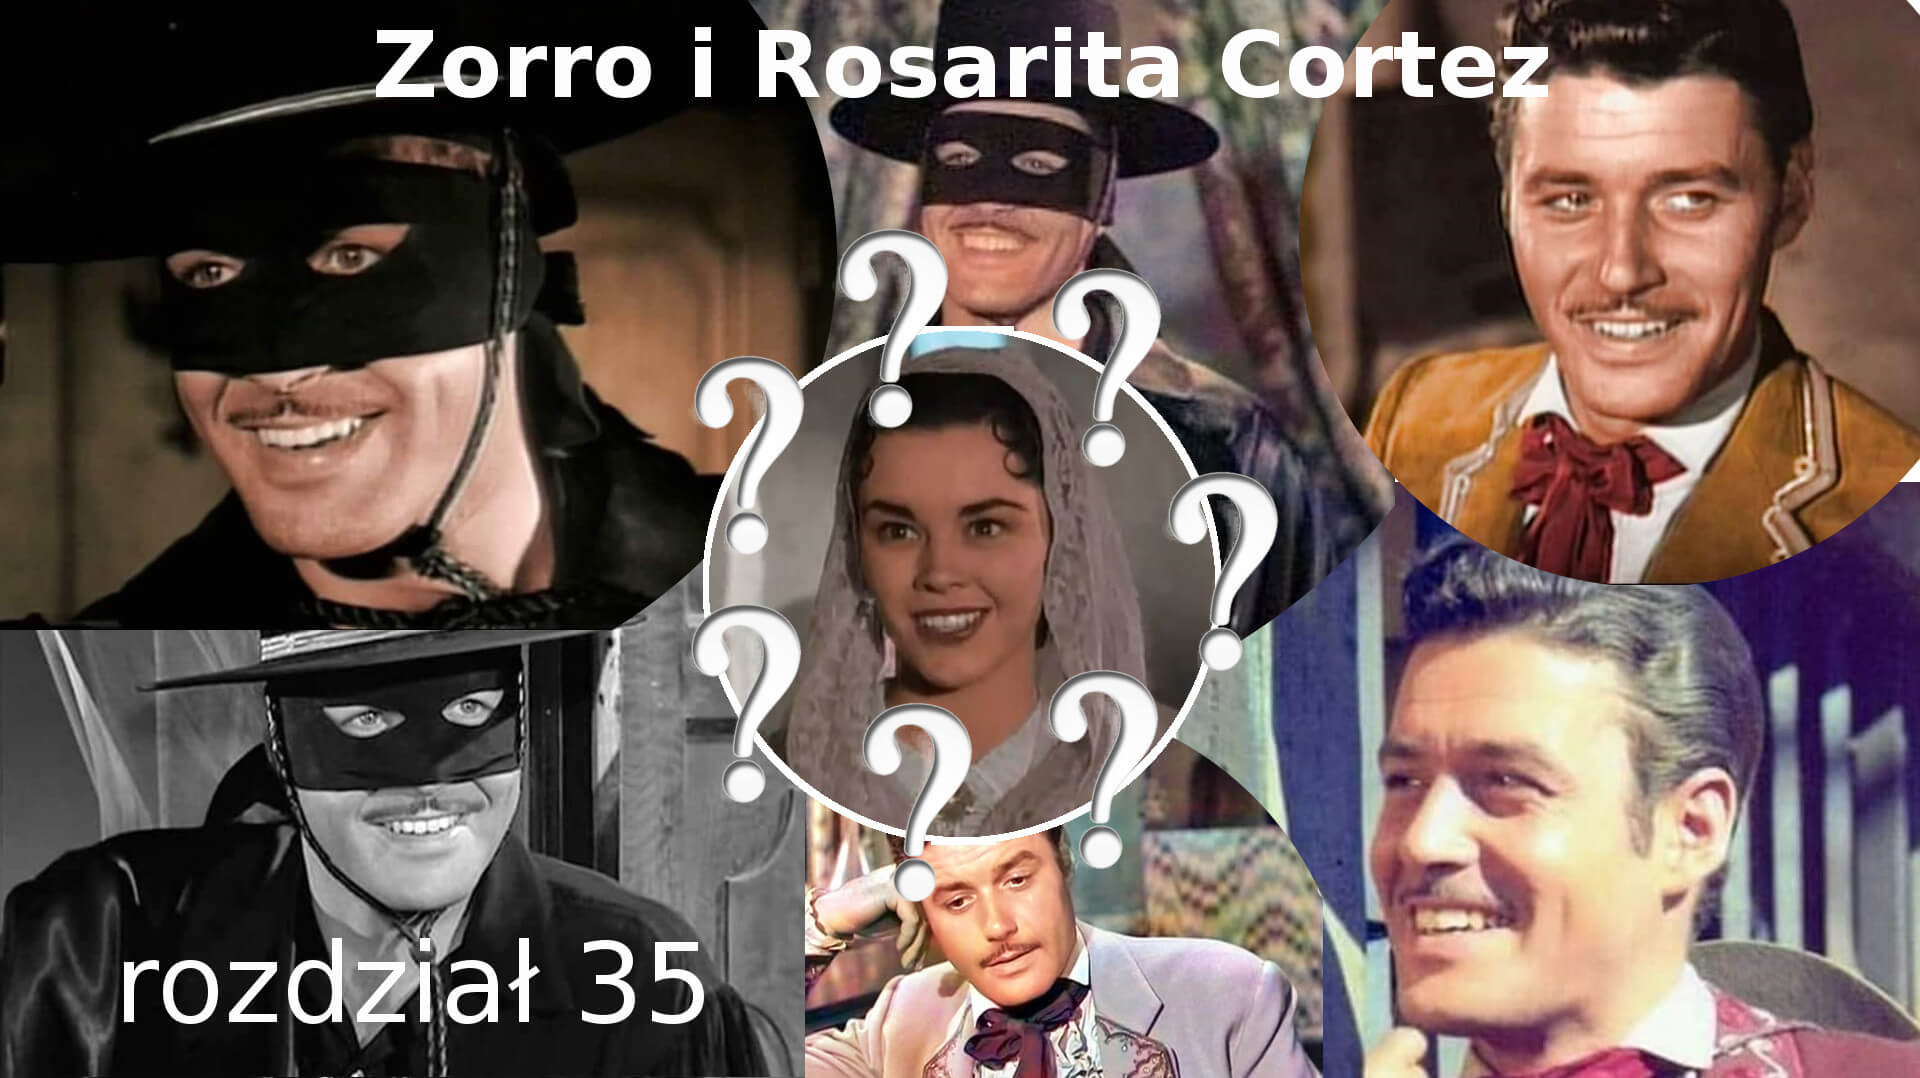 Zorro i Rosarita Cortez rozdział 35 Walt Disney Zorro fanfiction